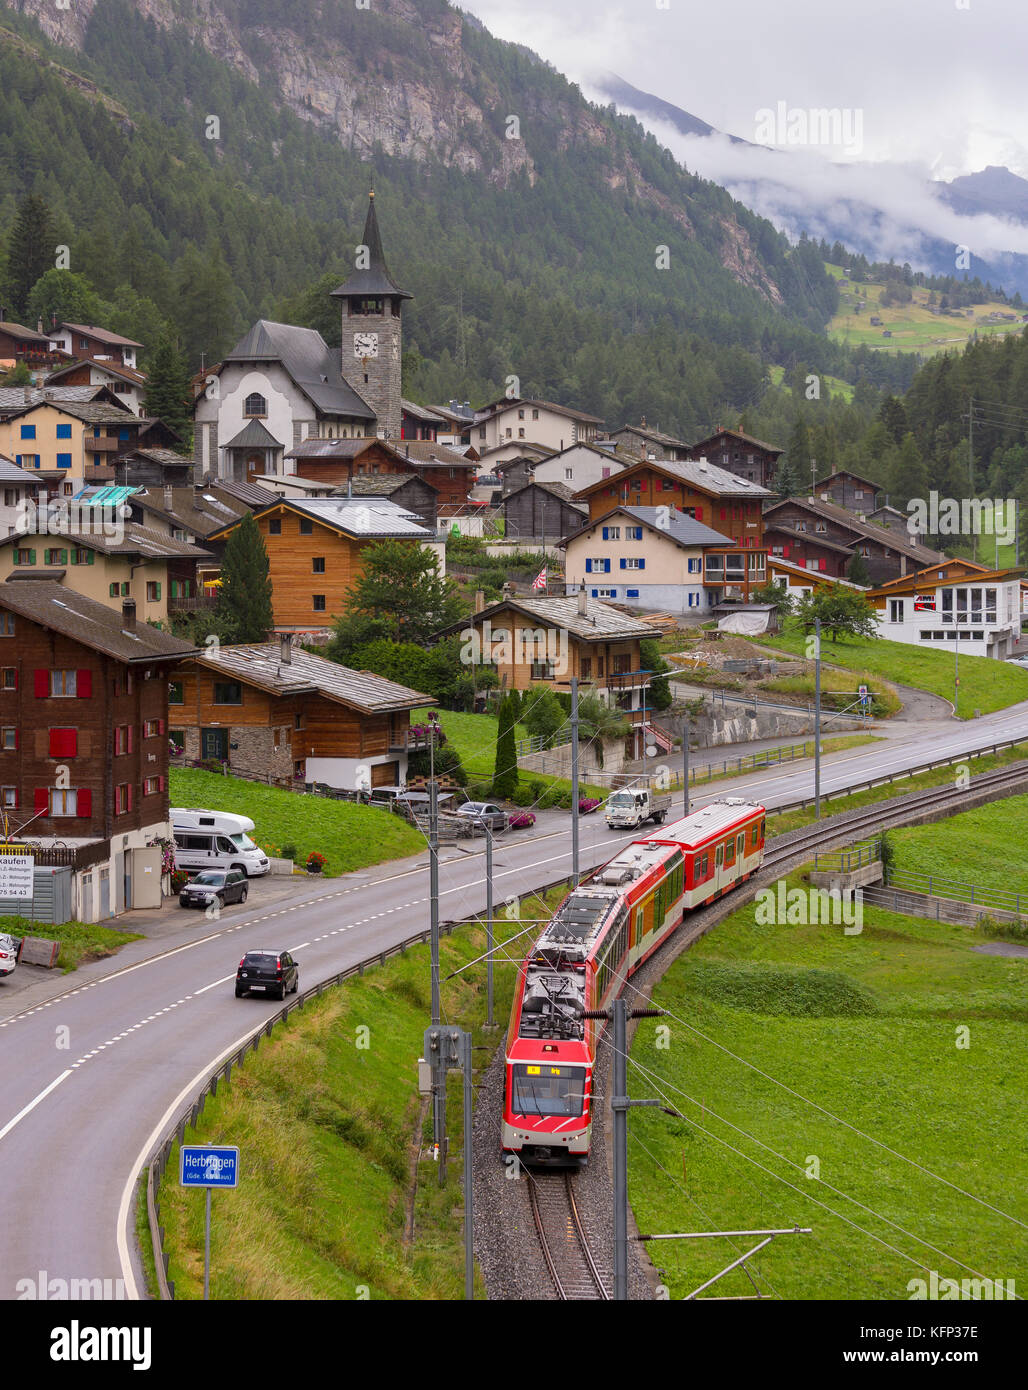 Herbriggen, Schweiz - Eisenbahn Zug durch das Dorf Stockfotografie - Alamy